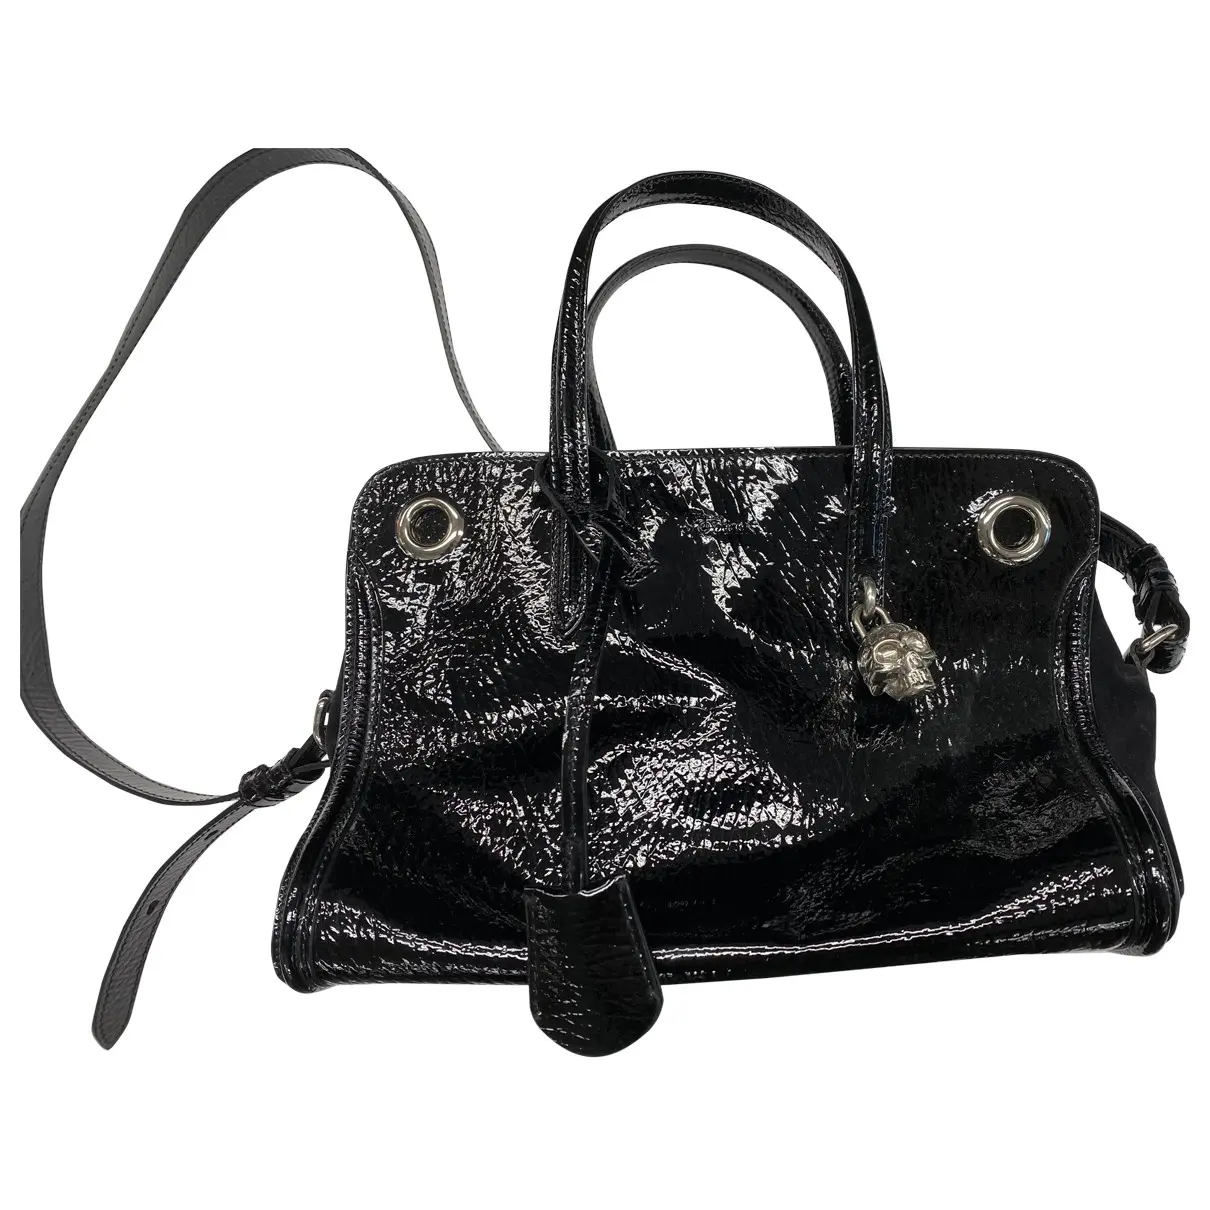 Skull patent leather handbag Alexander McQueen